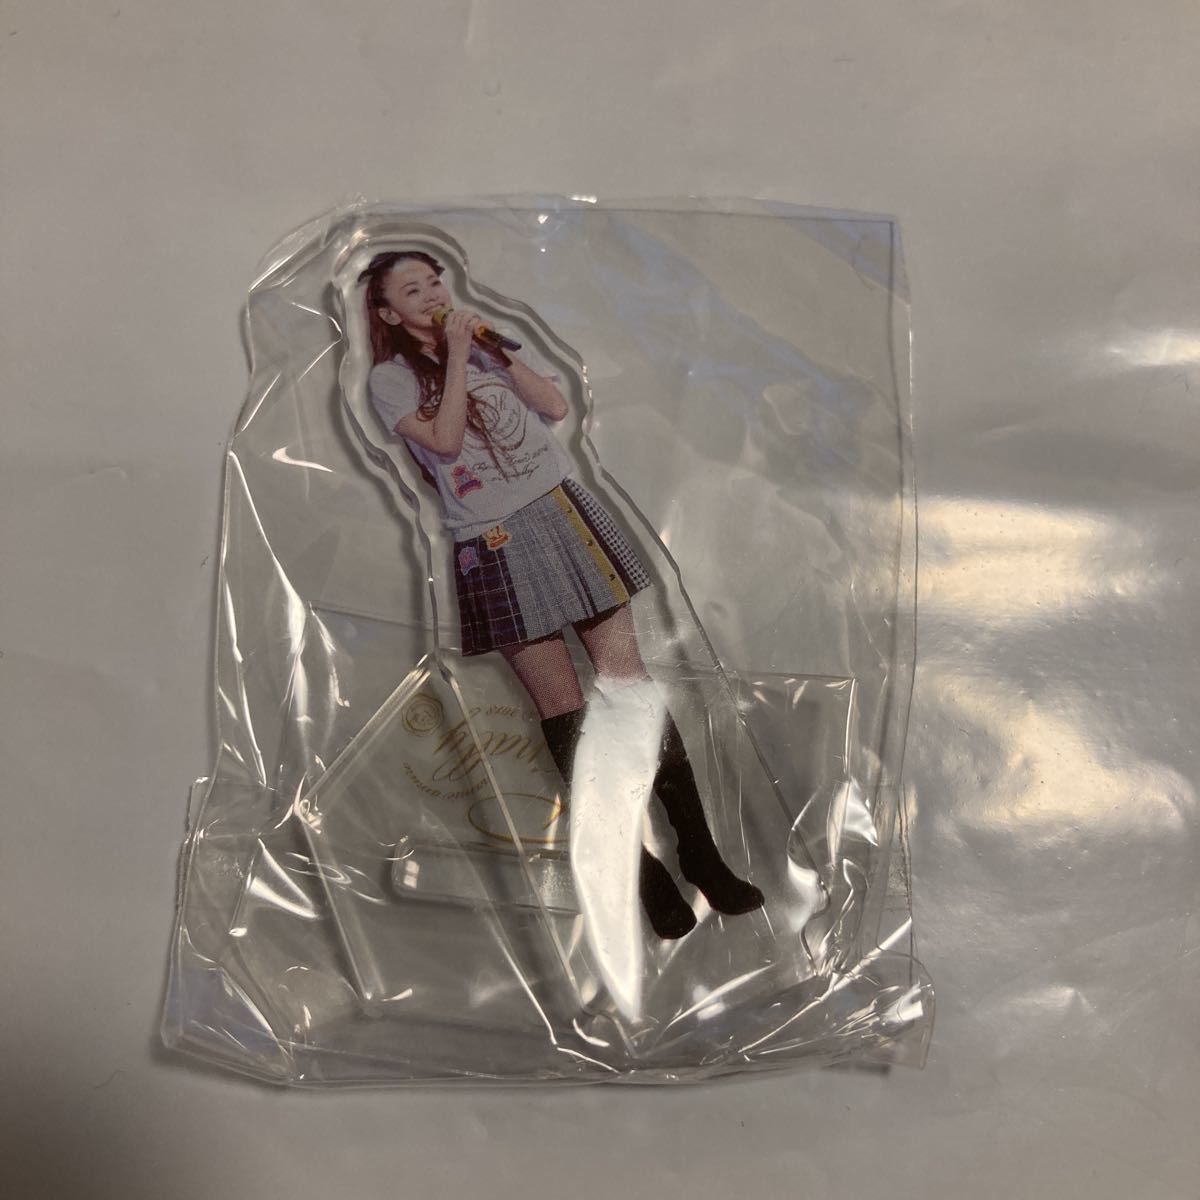 19999.5円保証商品 クーポン発行 安室奈美恵 アクリルスタンド 